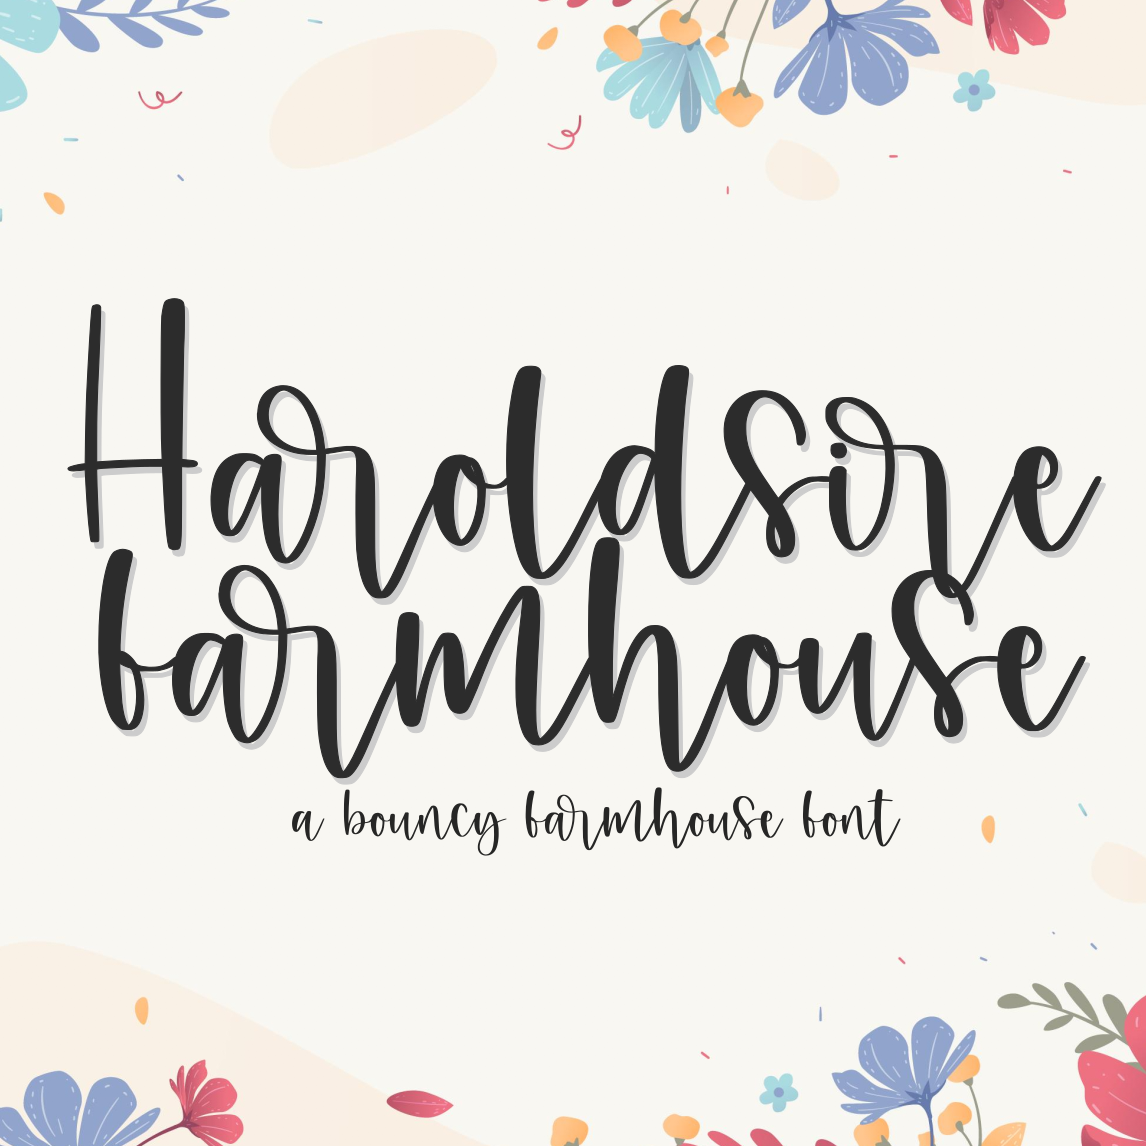 haroldshire farmhouse font 2